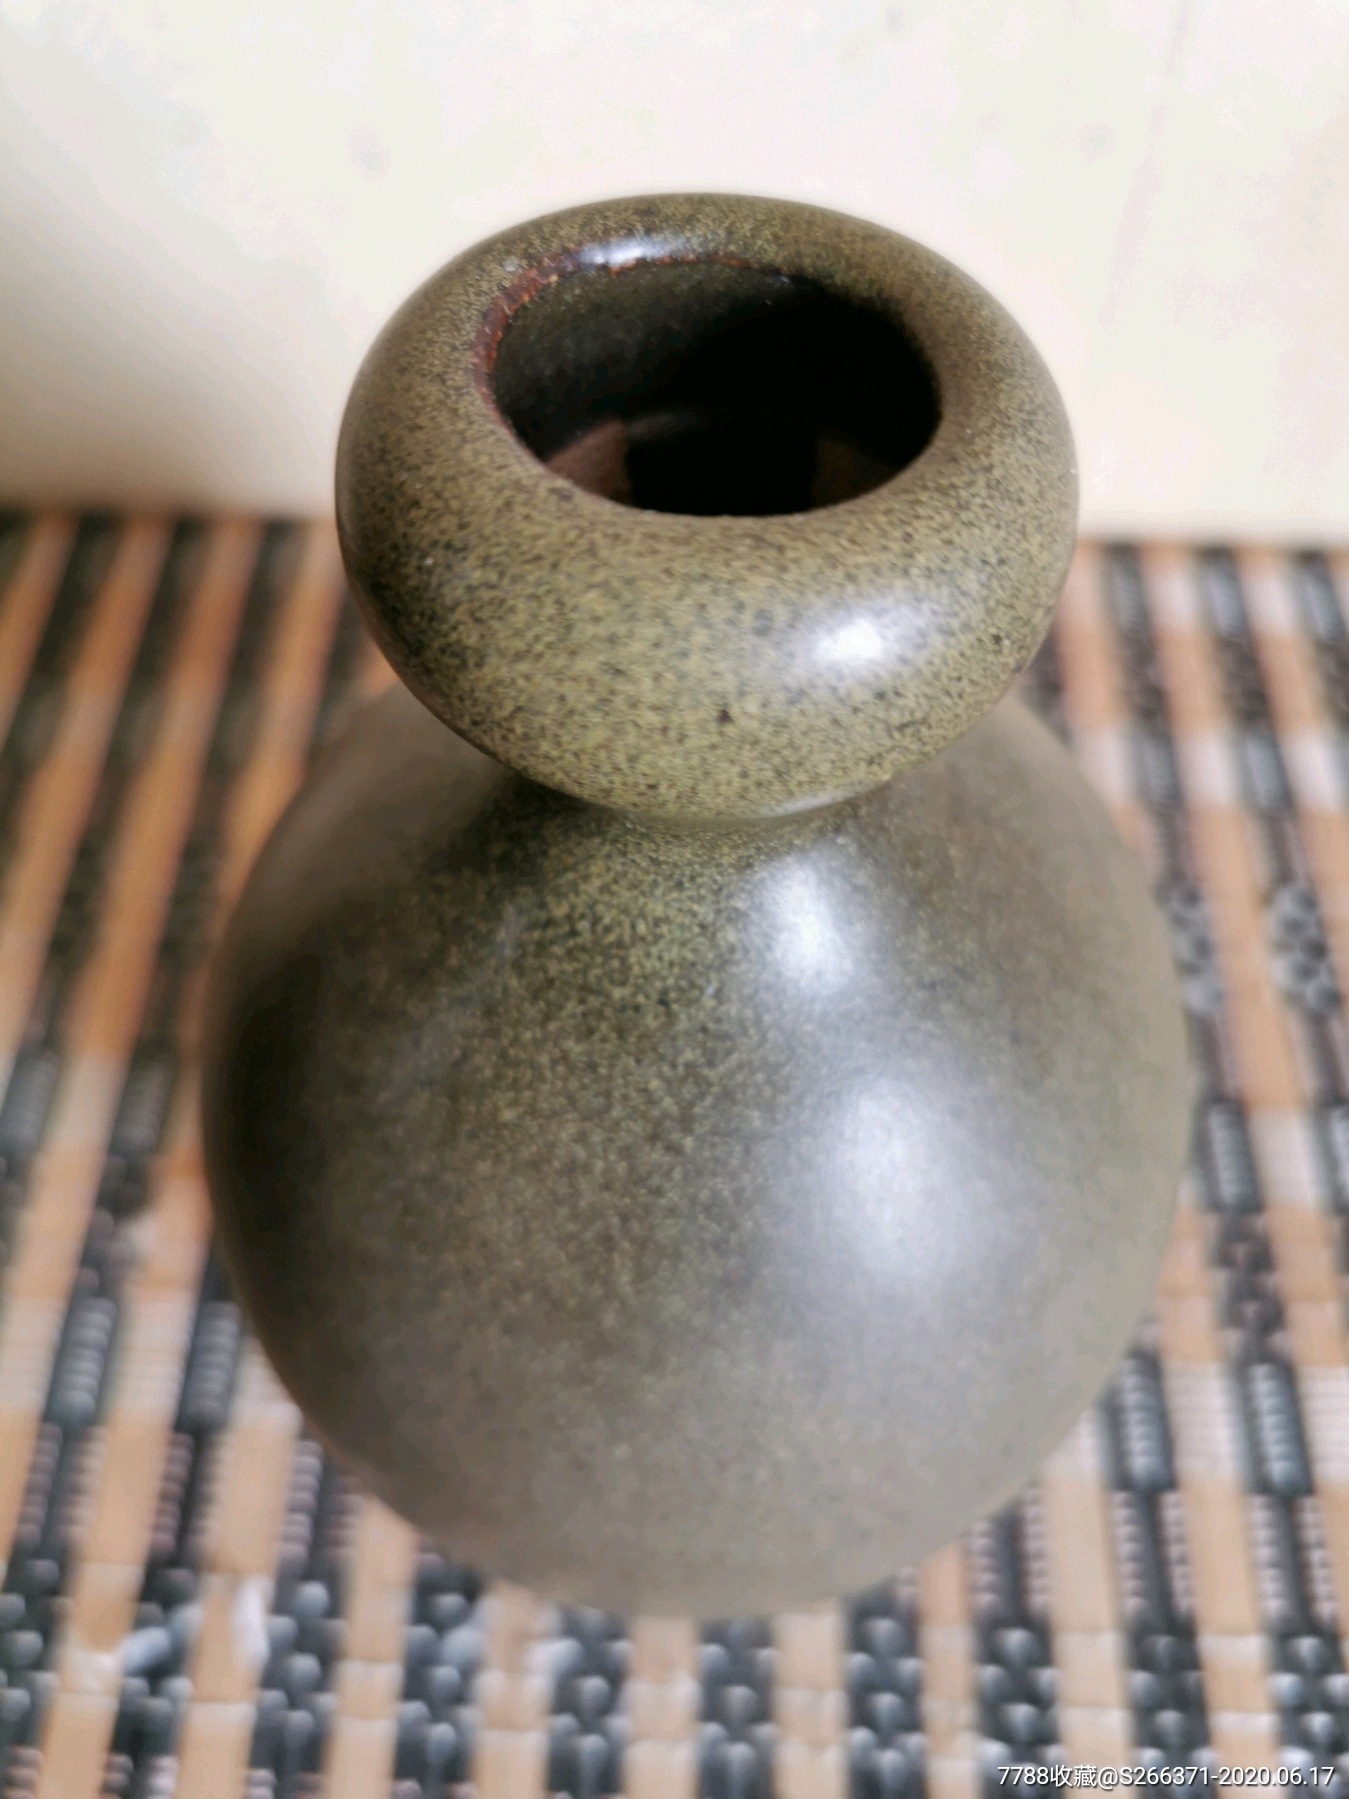 井陉窑茶具图片